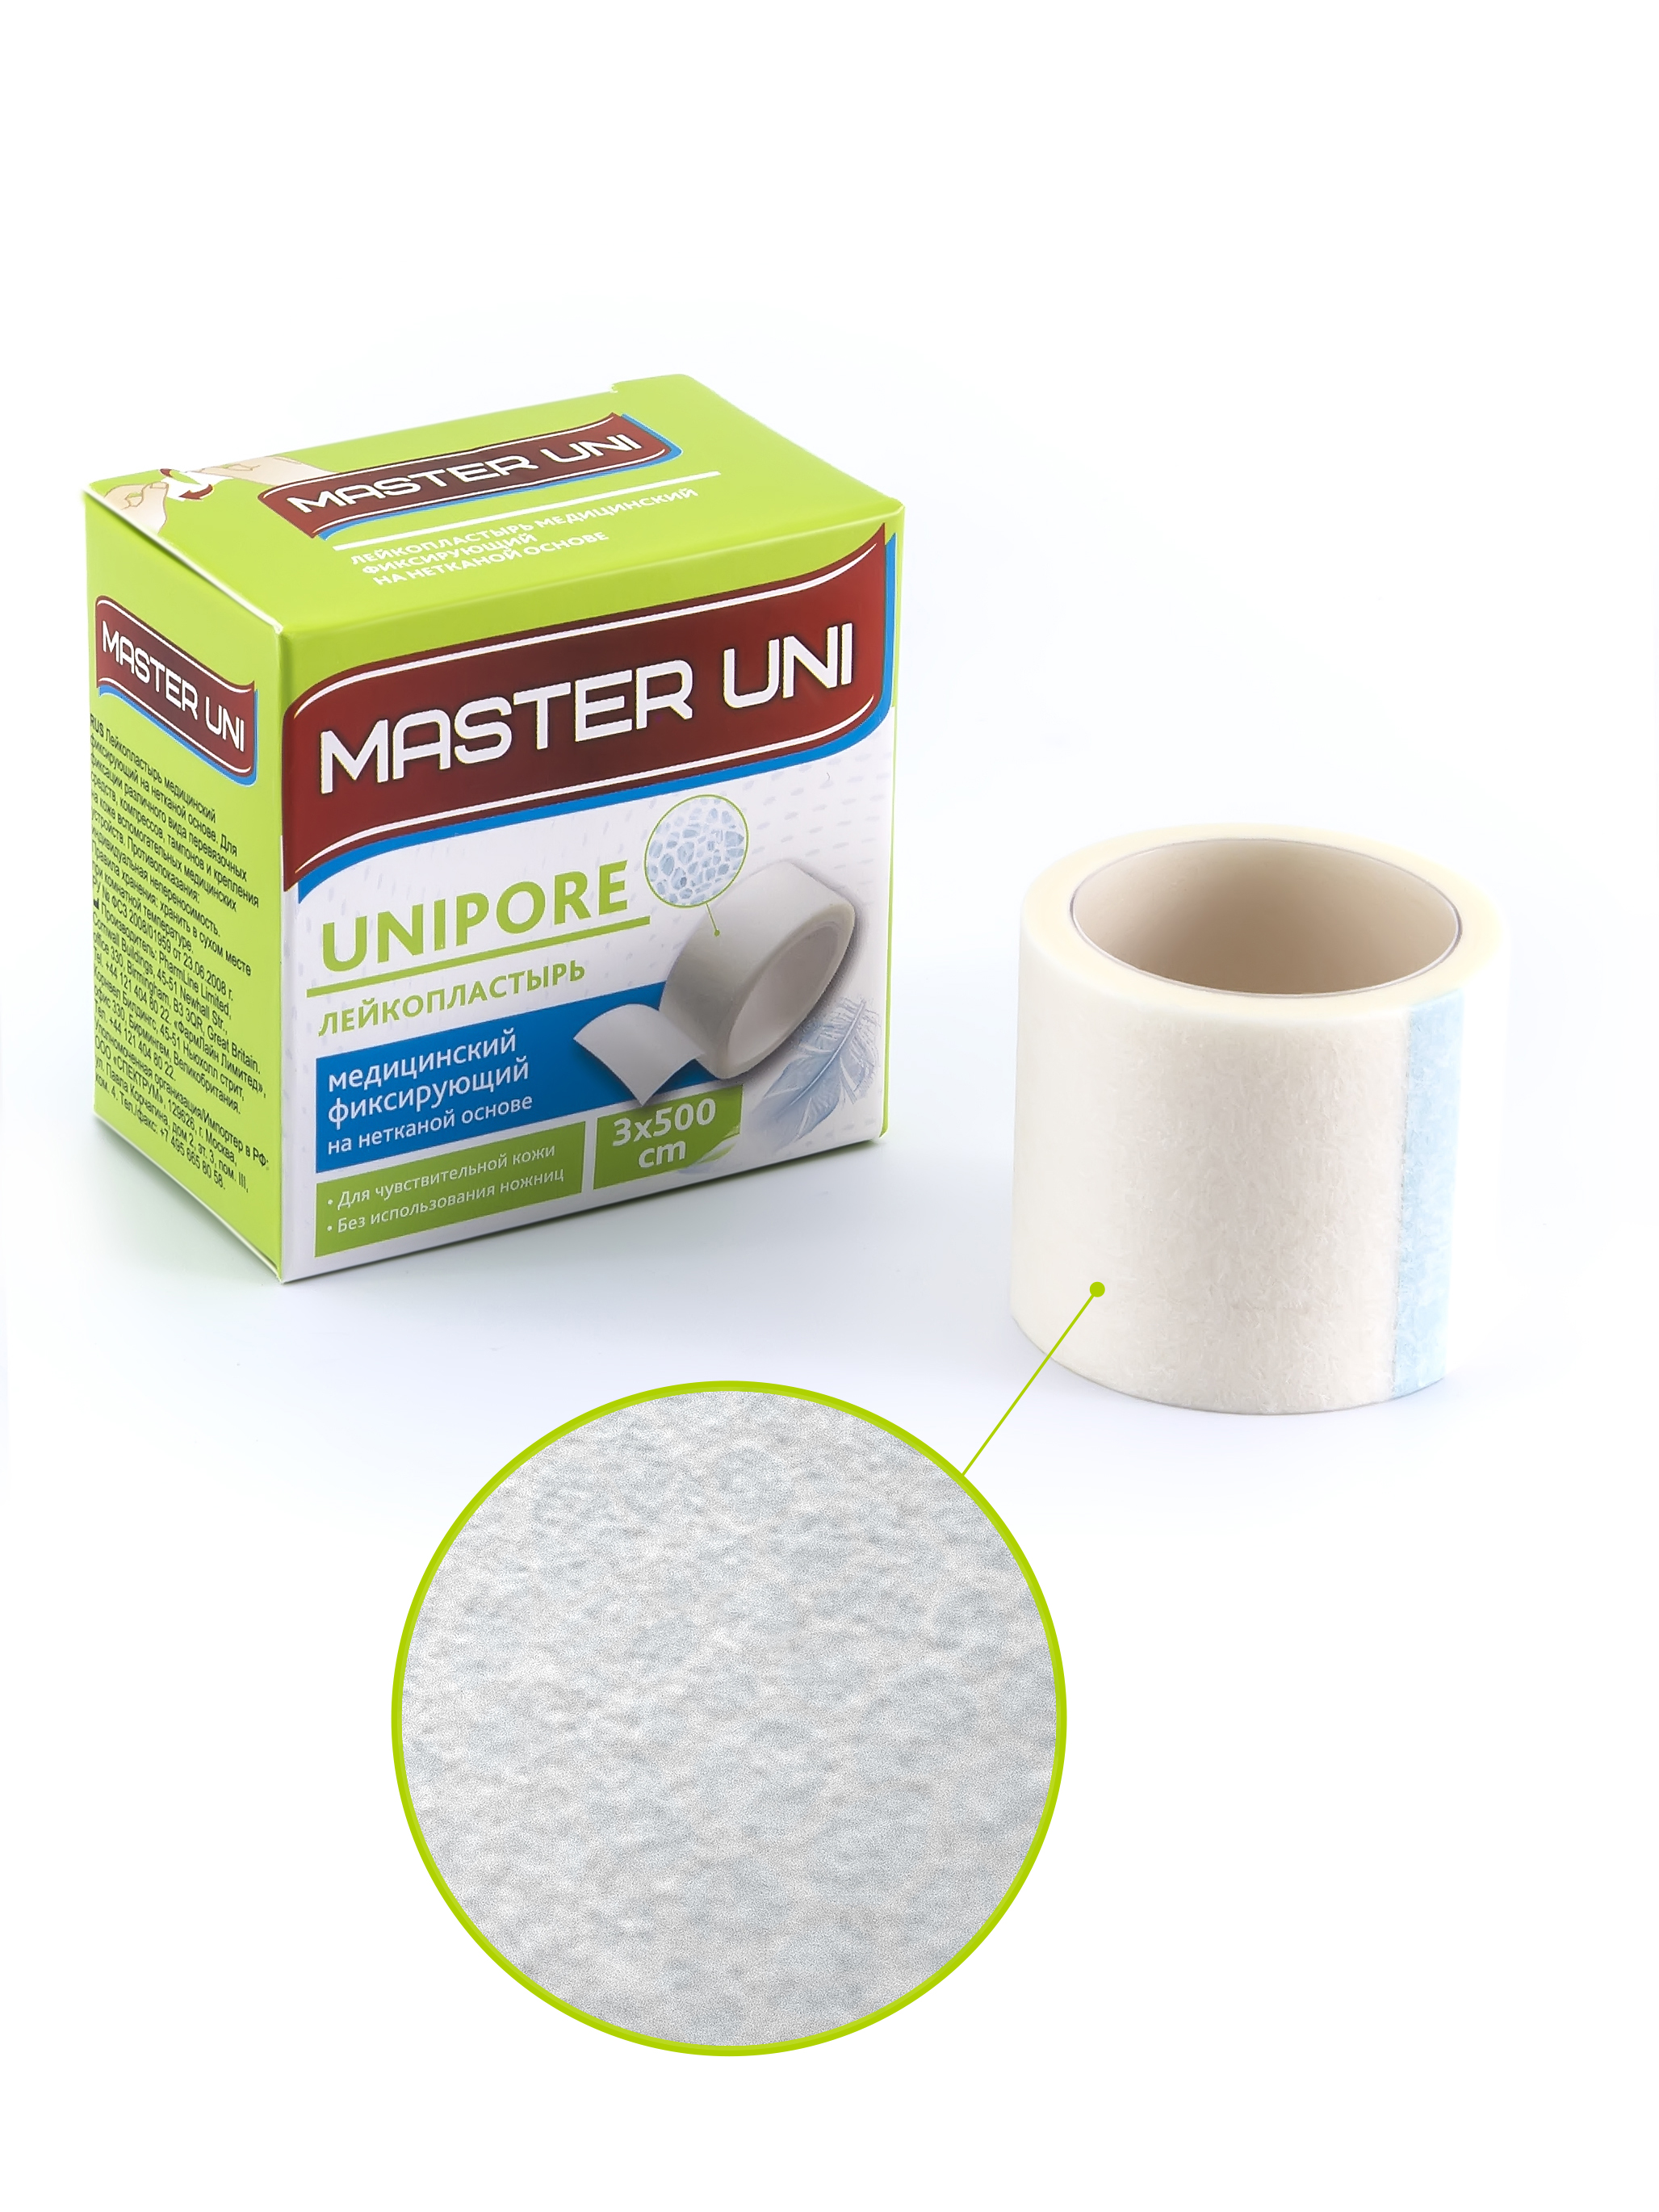 Купить MASTER UNI UNIPORE Лейкопластырь 3 х 500 см на нетканой основе, Пластырь Master Uni Unipore фиксирующий на нетканой основе 3 х 500 см